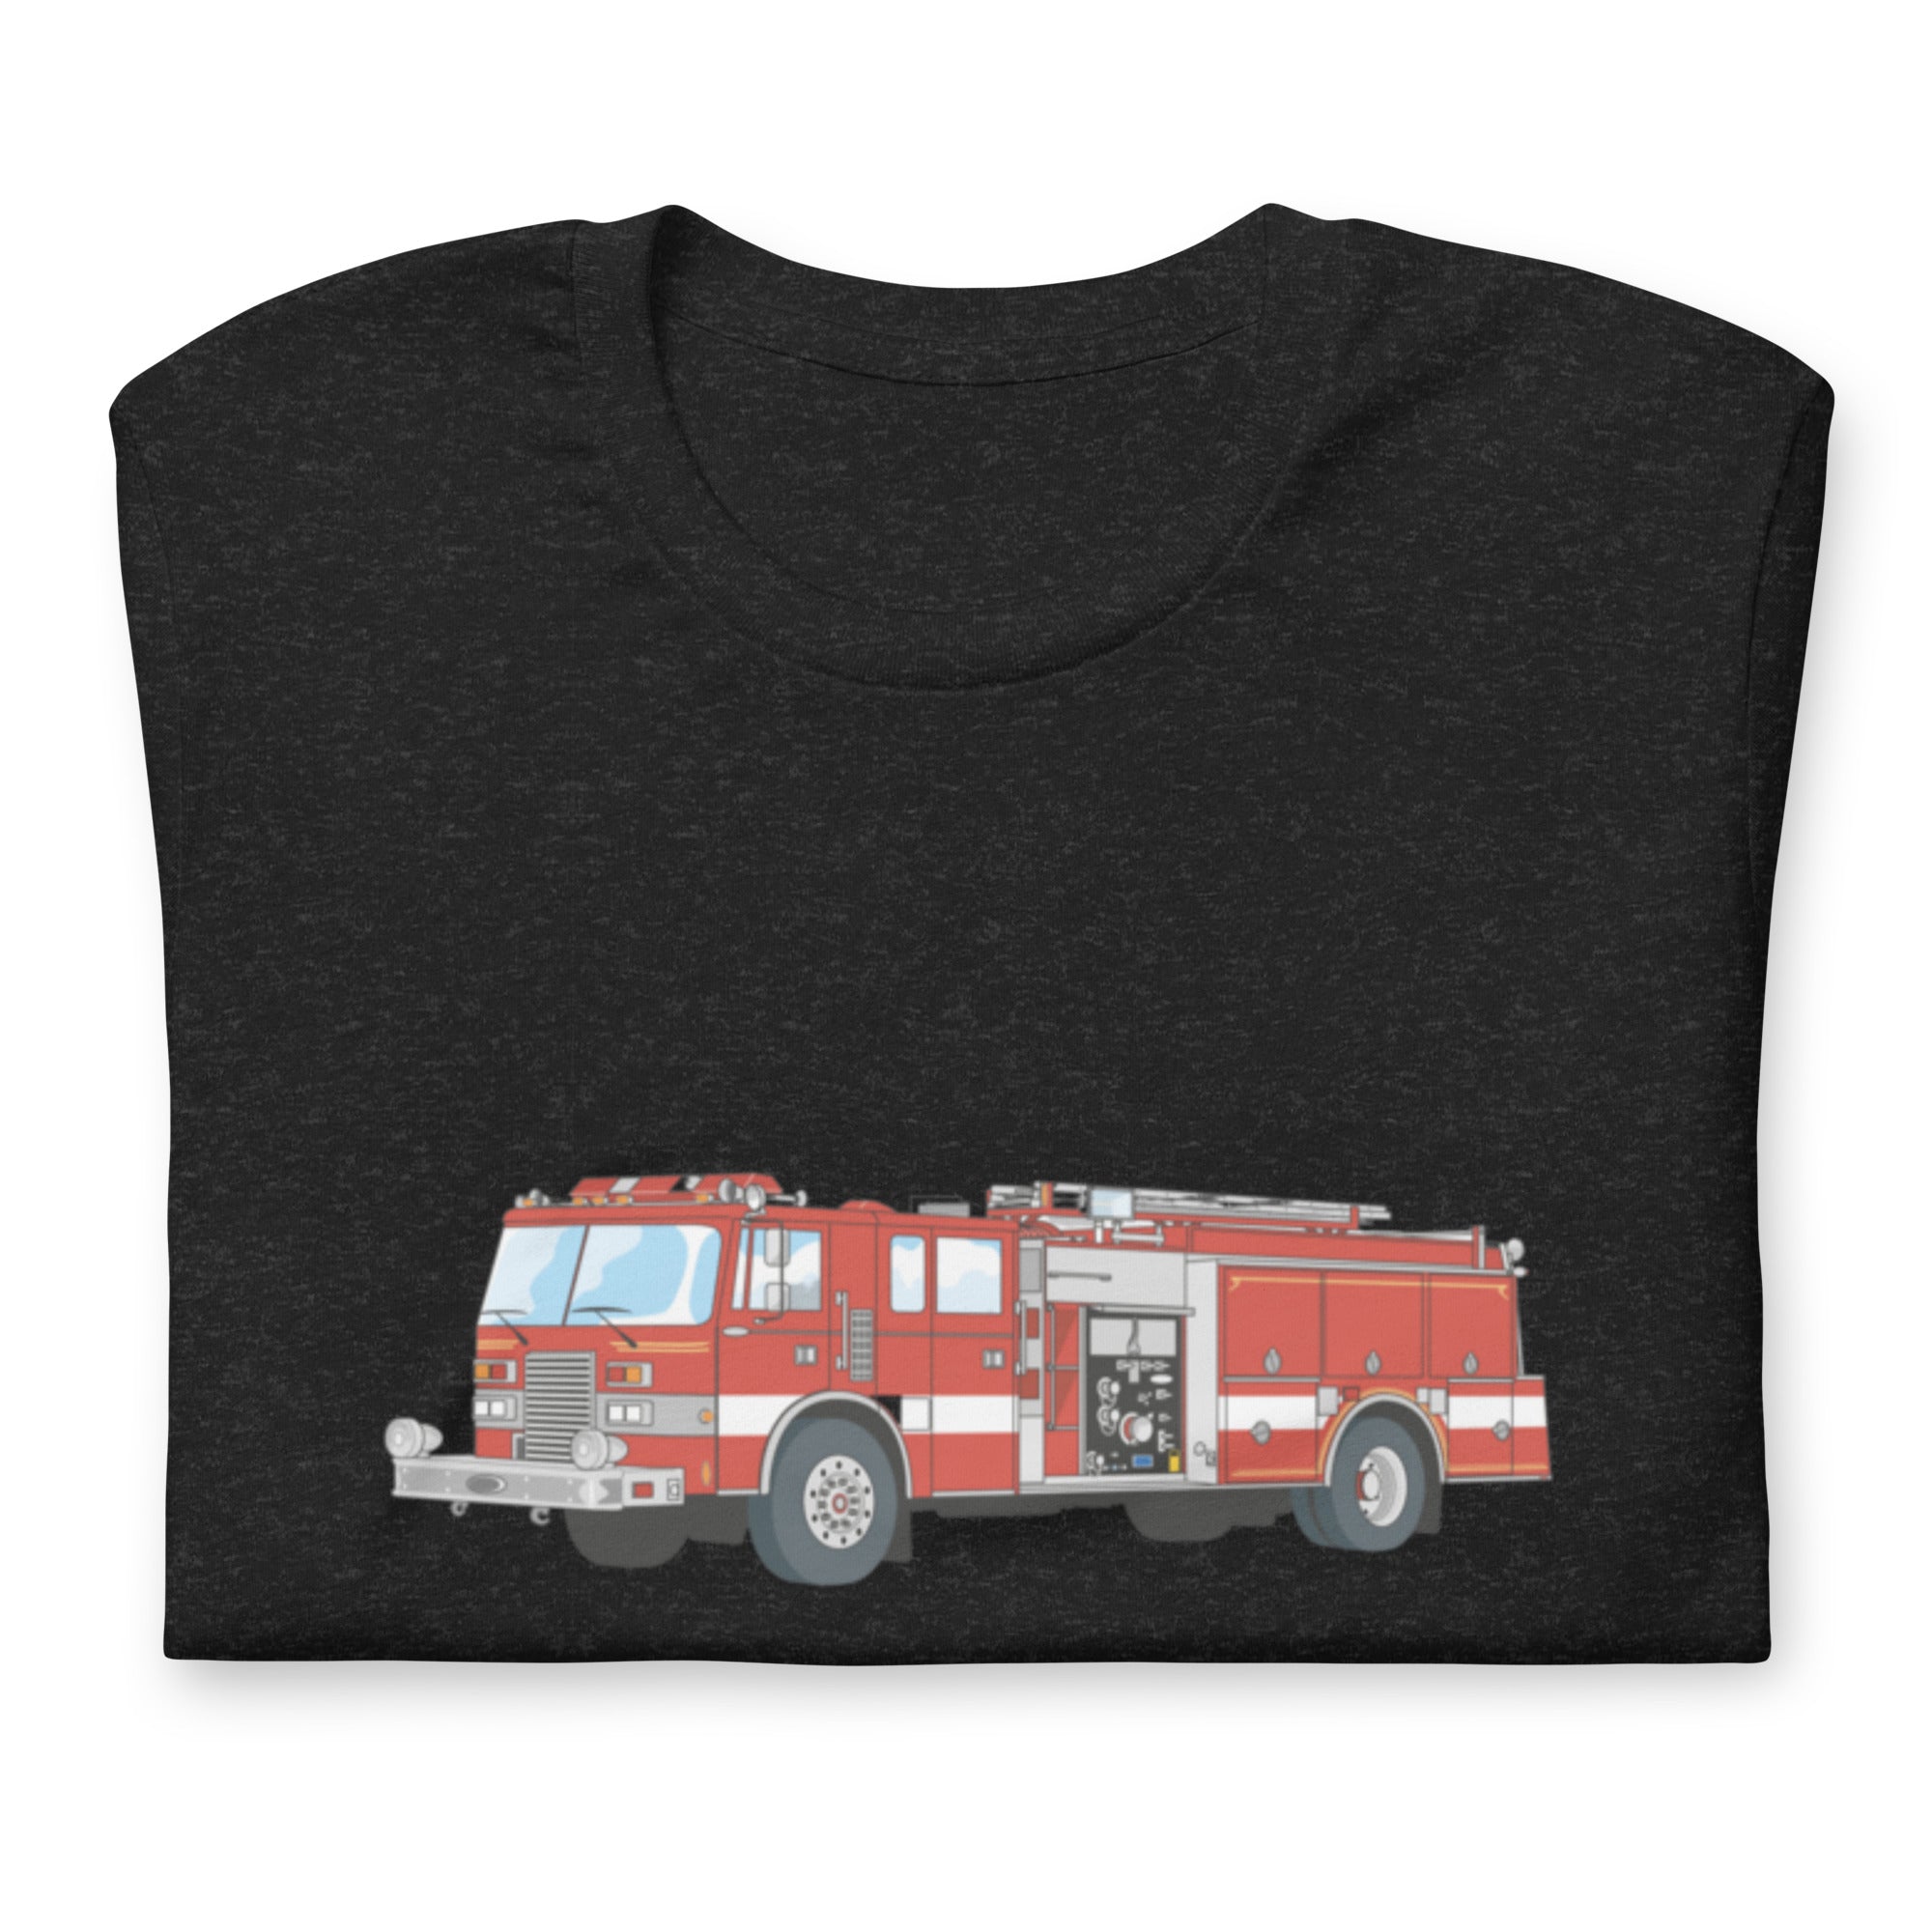 The "FIRE TRUCK" T-Shirt